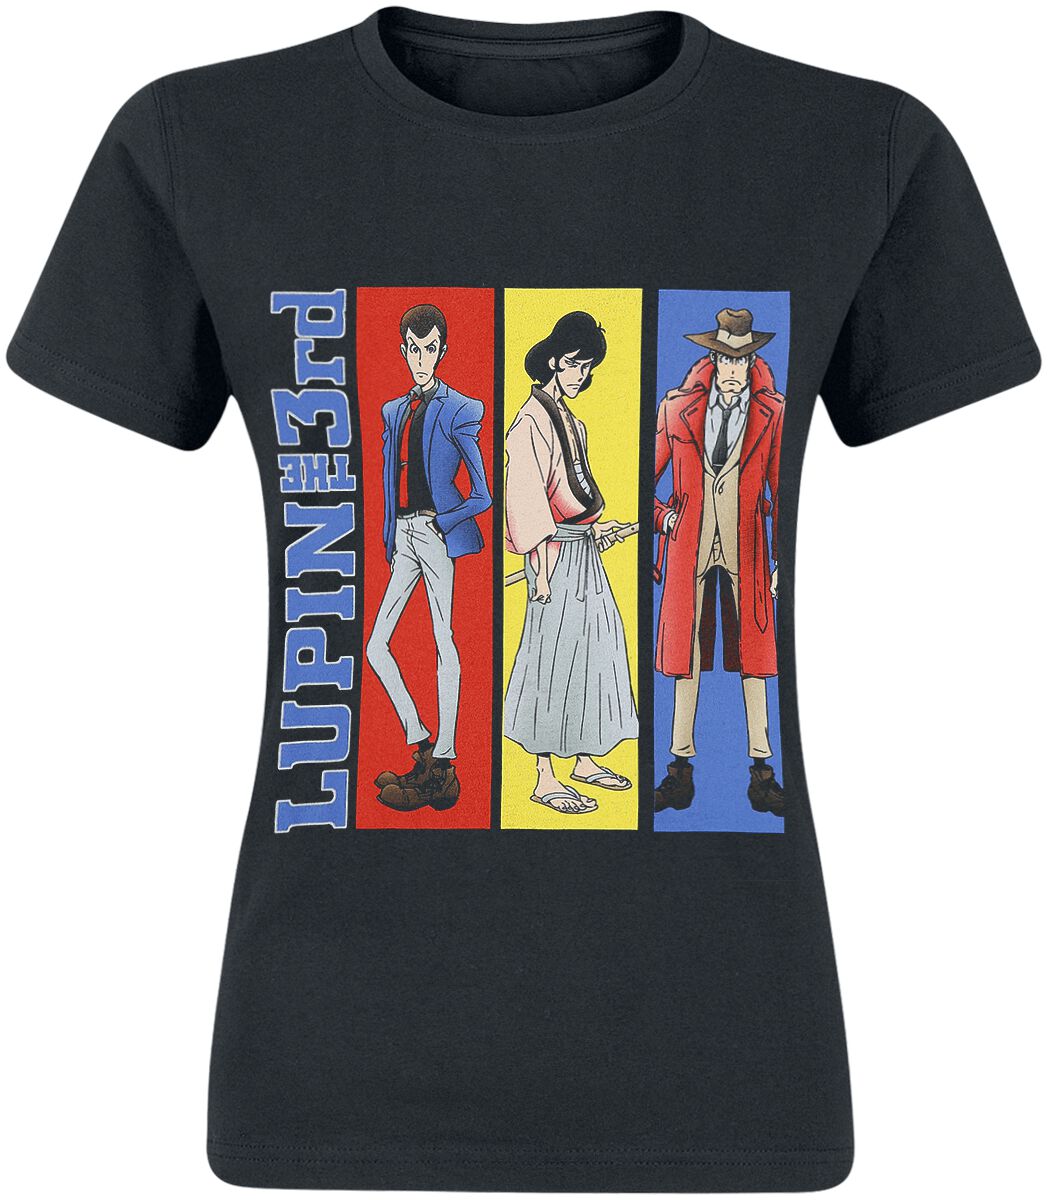 T-Shirt Manches courtes de Lupin The 3rd - Rayures - S à M - pour Femme - noir